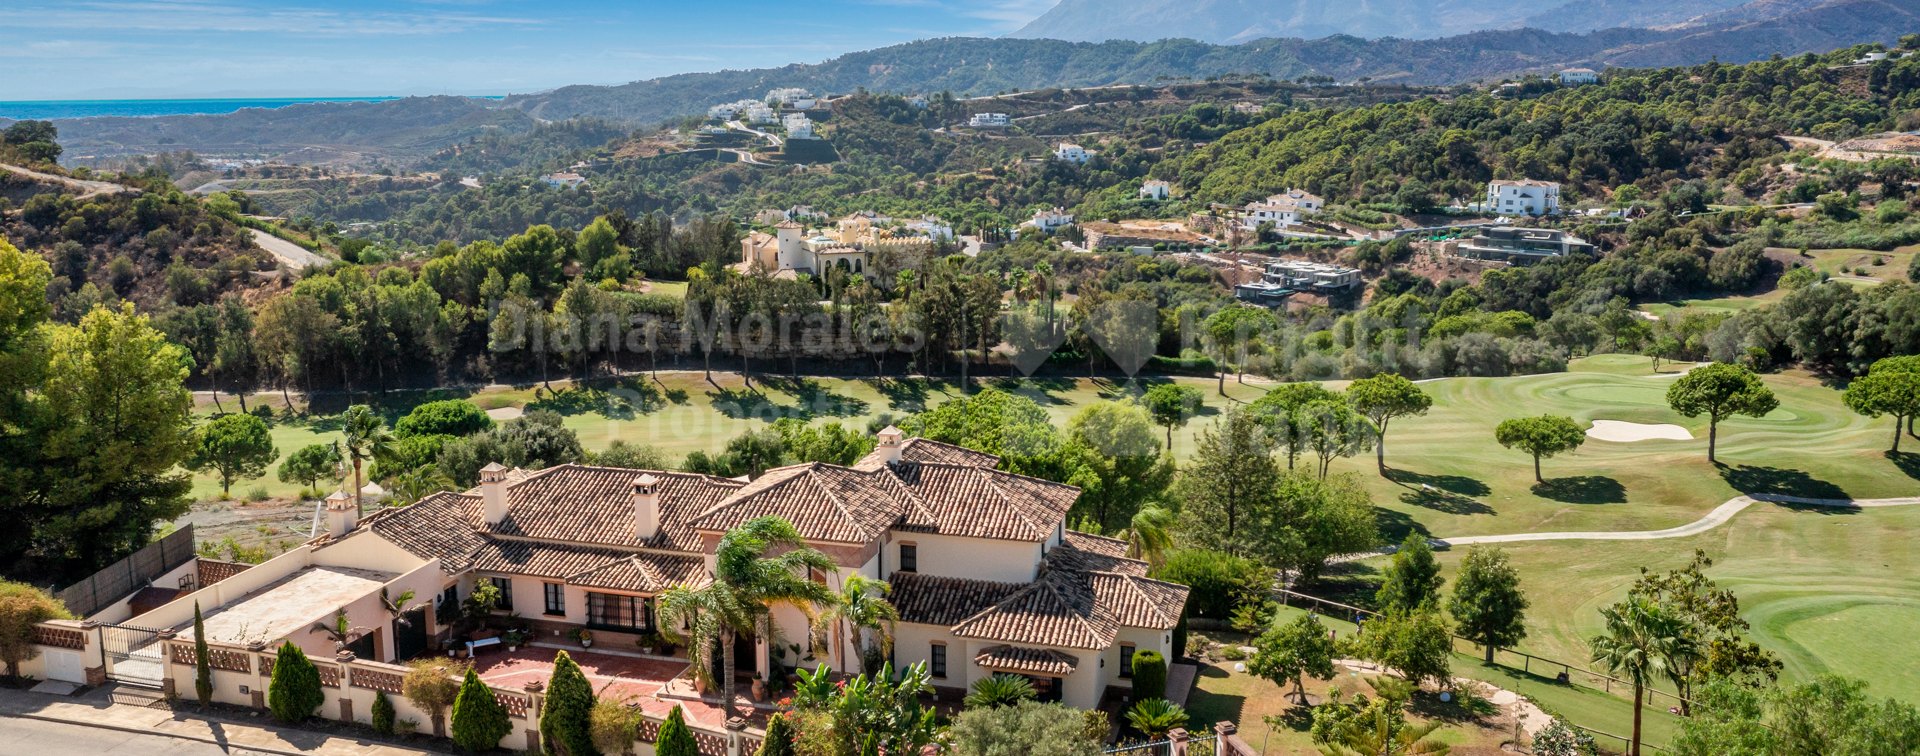 Marbella Club Golf Resort, Vistas al golf en un ambiente de montaña